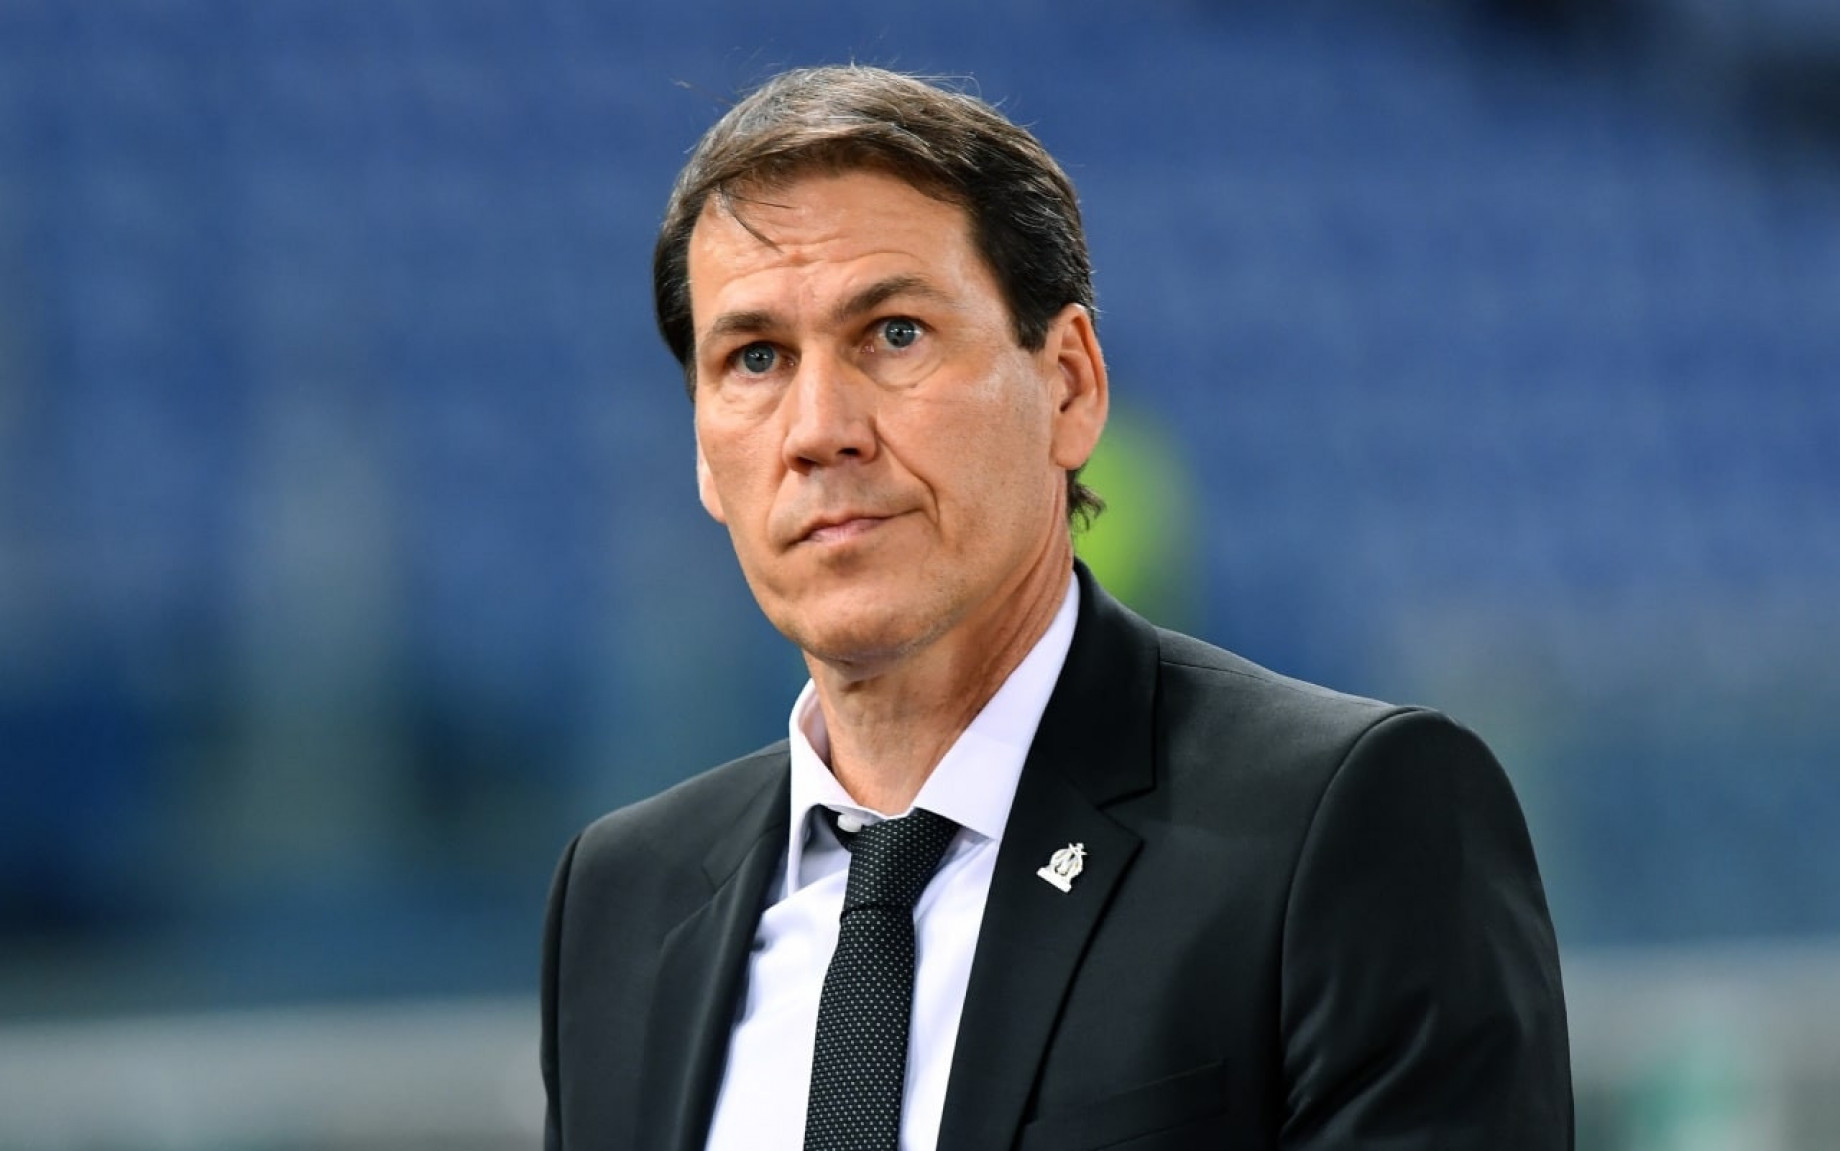 Rudi Garcia è il nuovo allenatore del Napoli